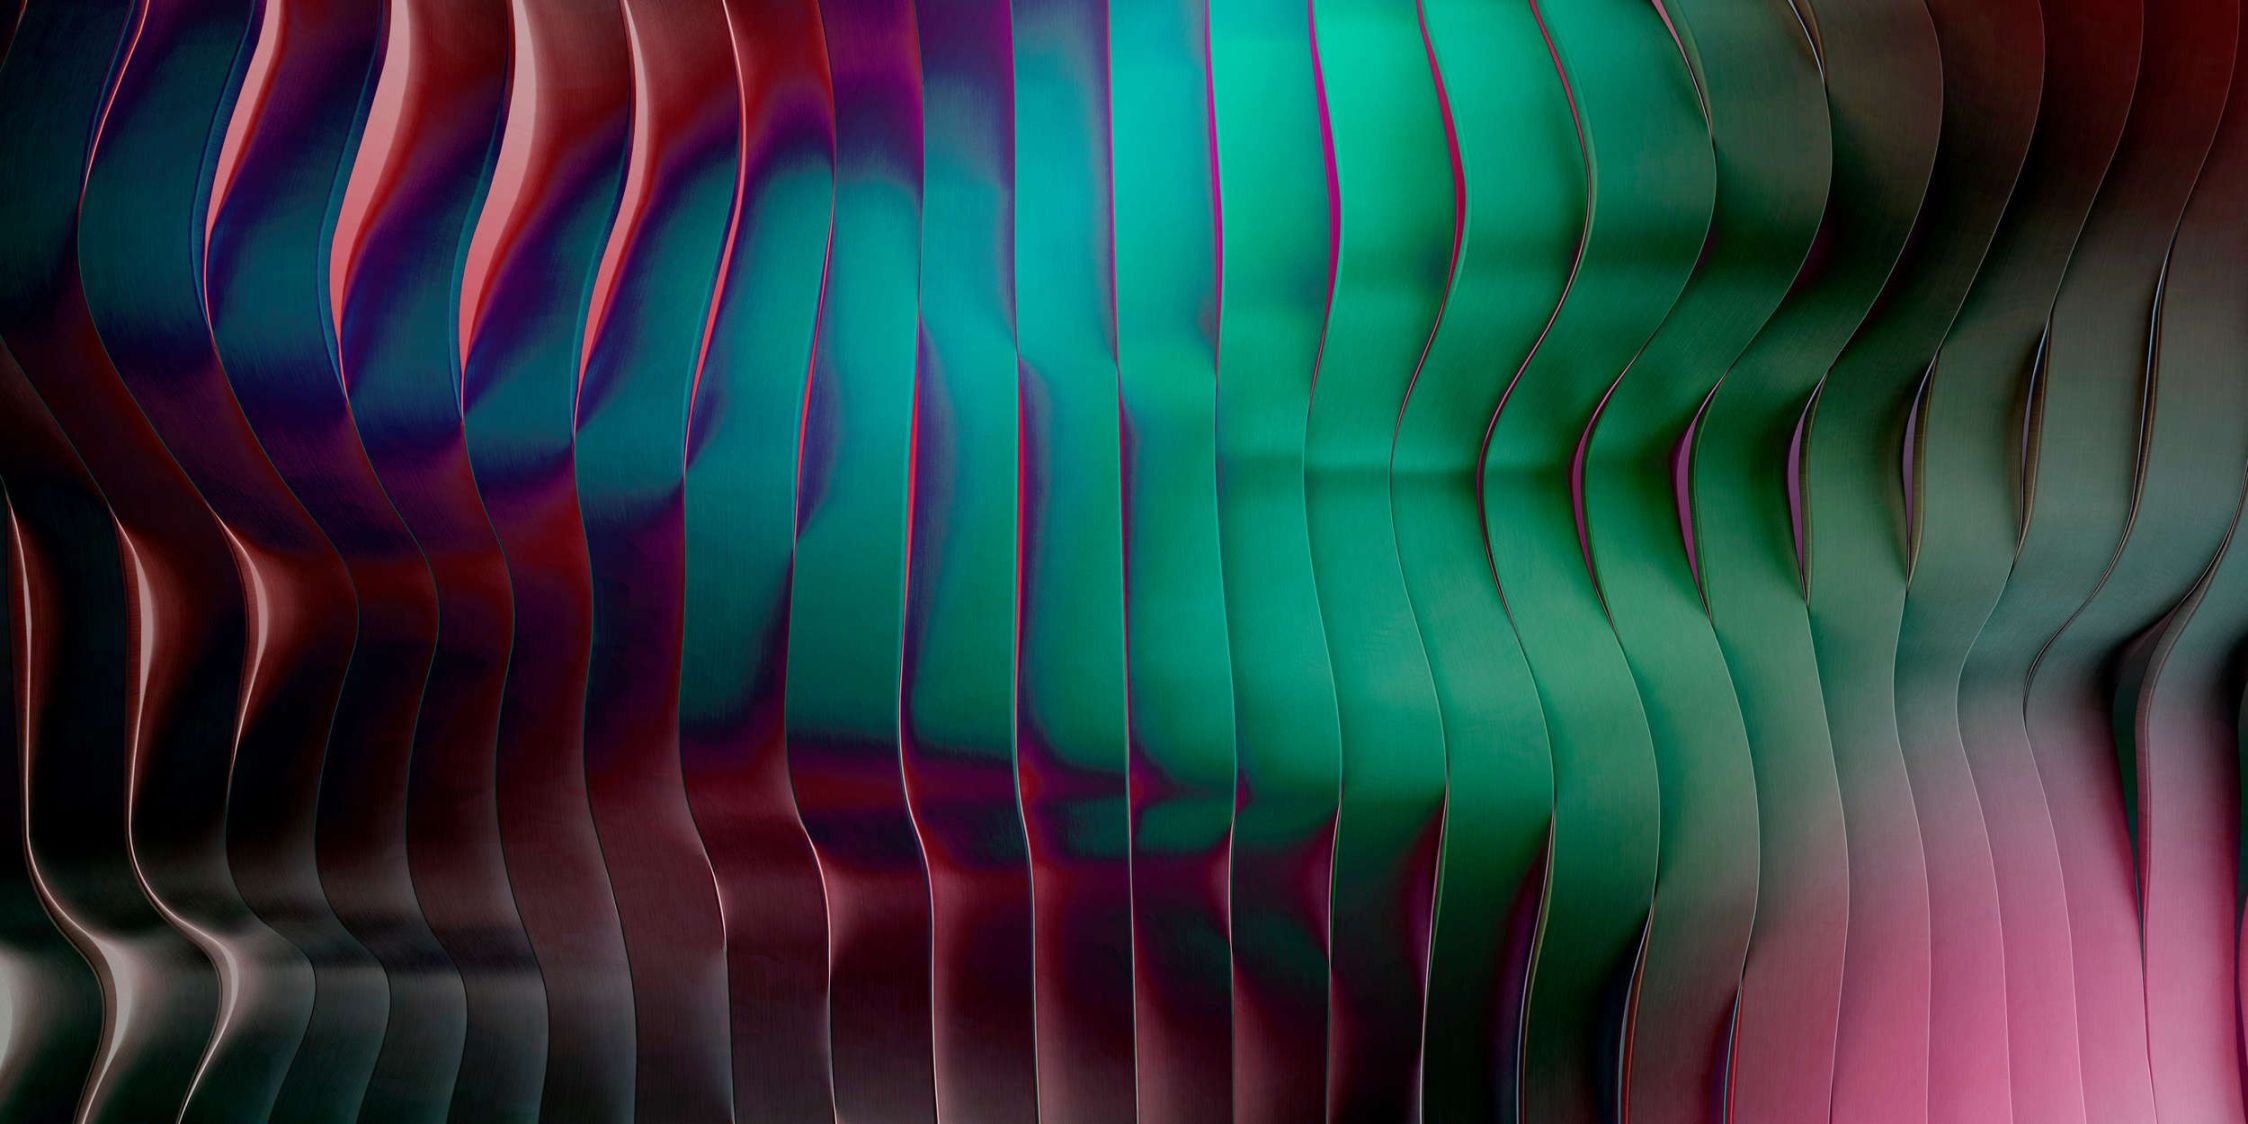             solaris 2 - Carta da parati moderna con architettura ondulata - colori al neon | tessuto non tessuto a trama leggera
        